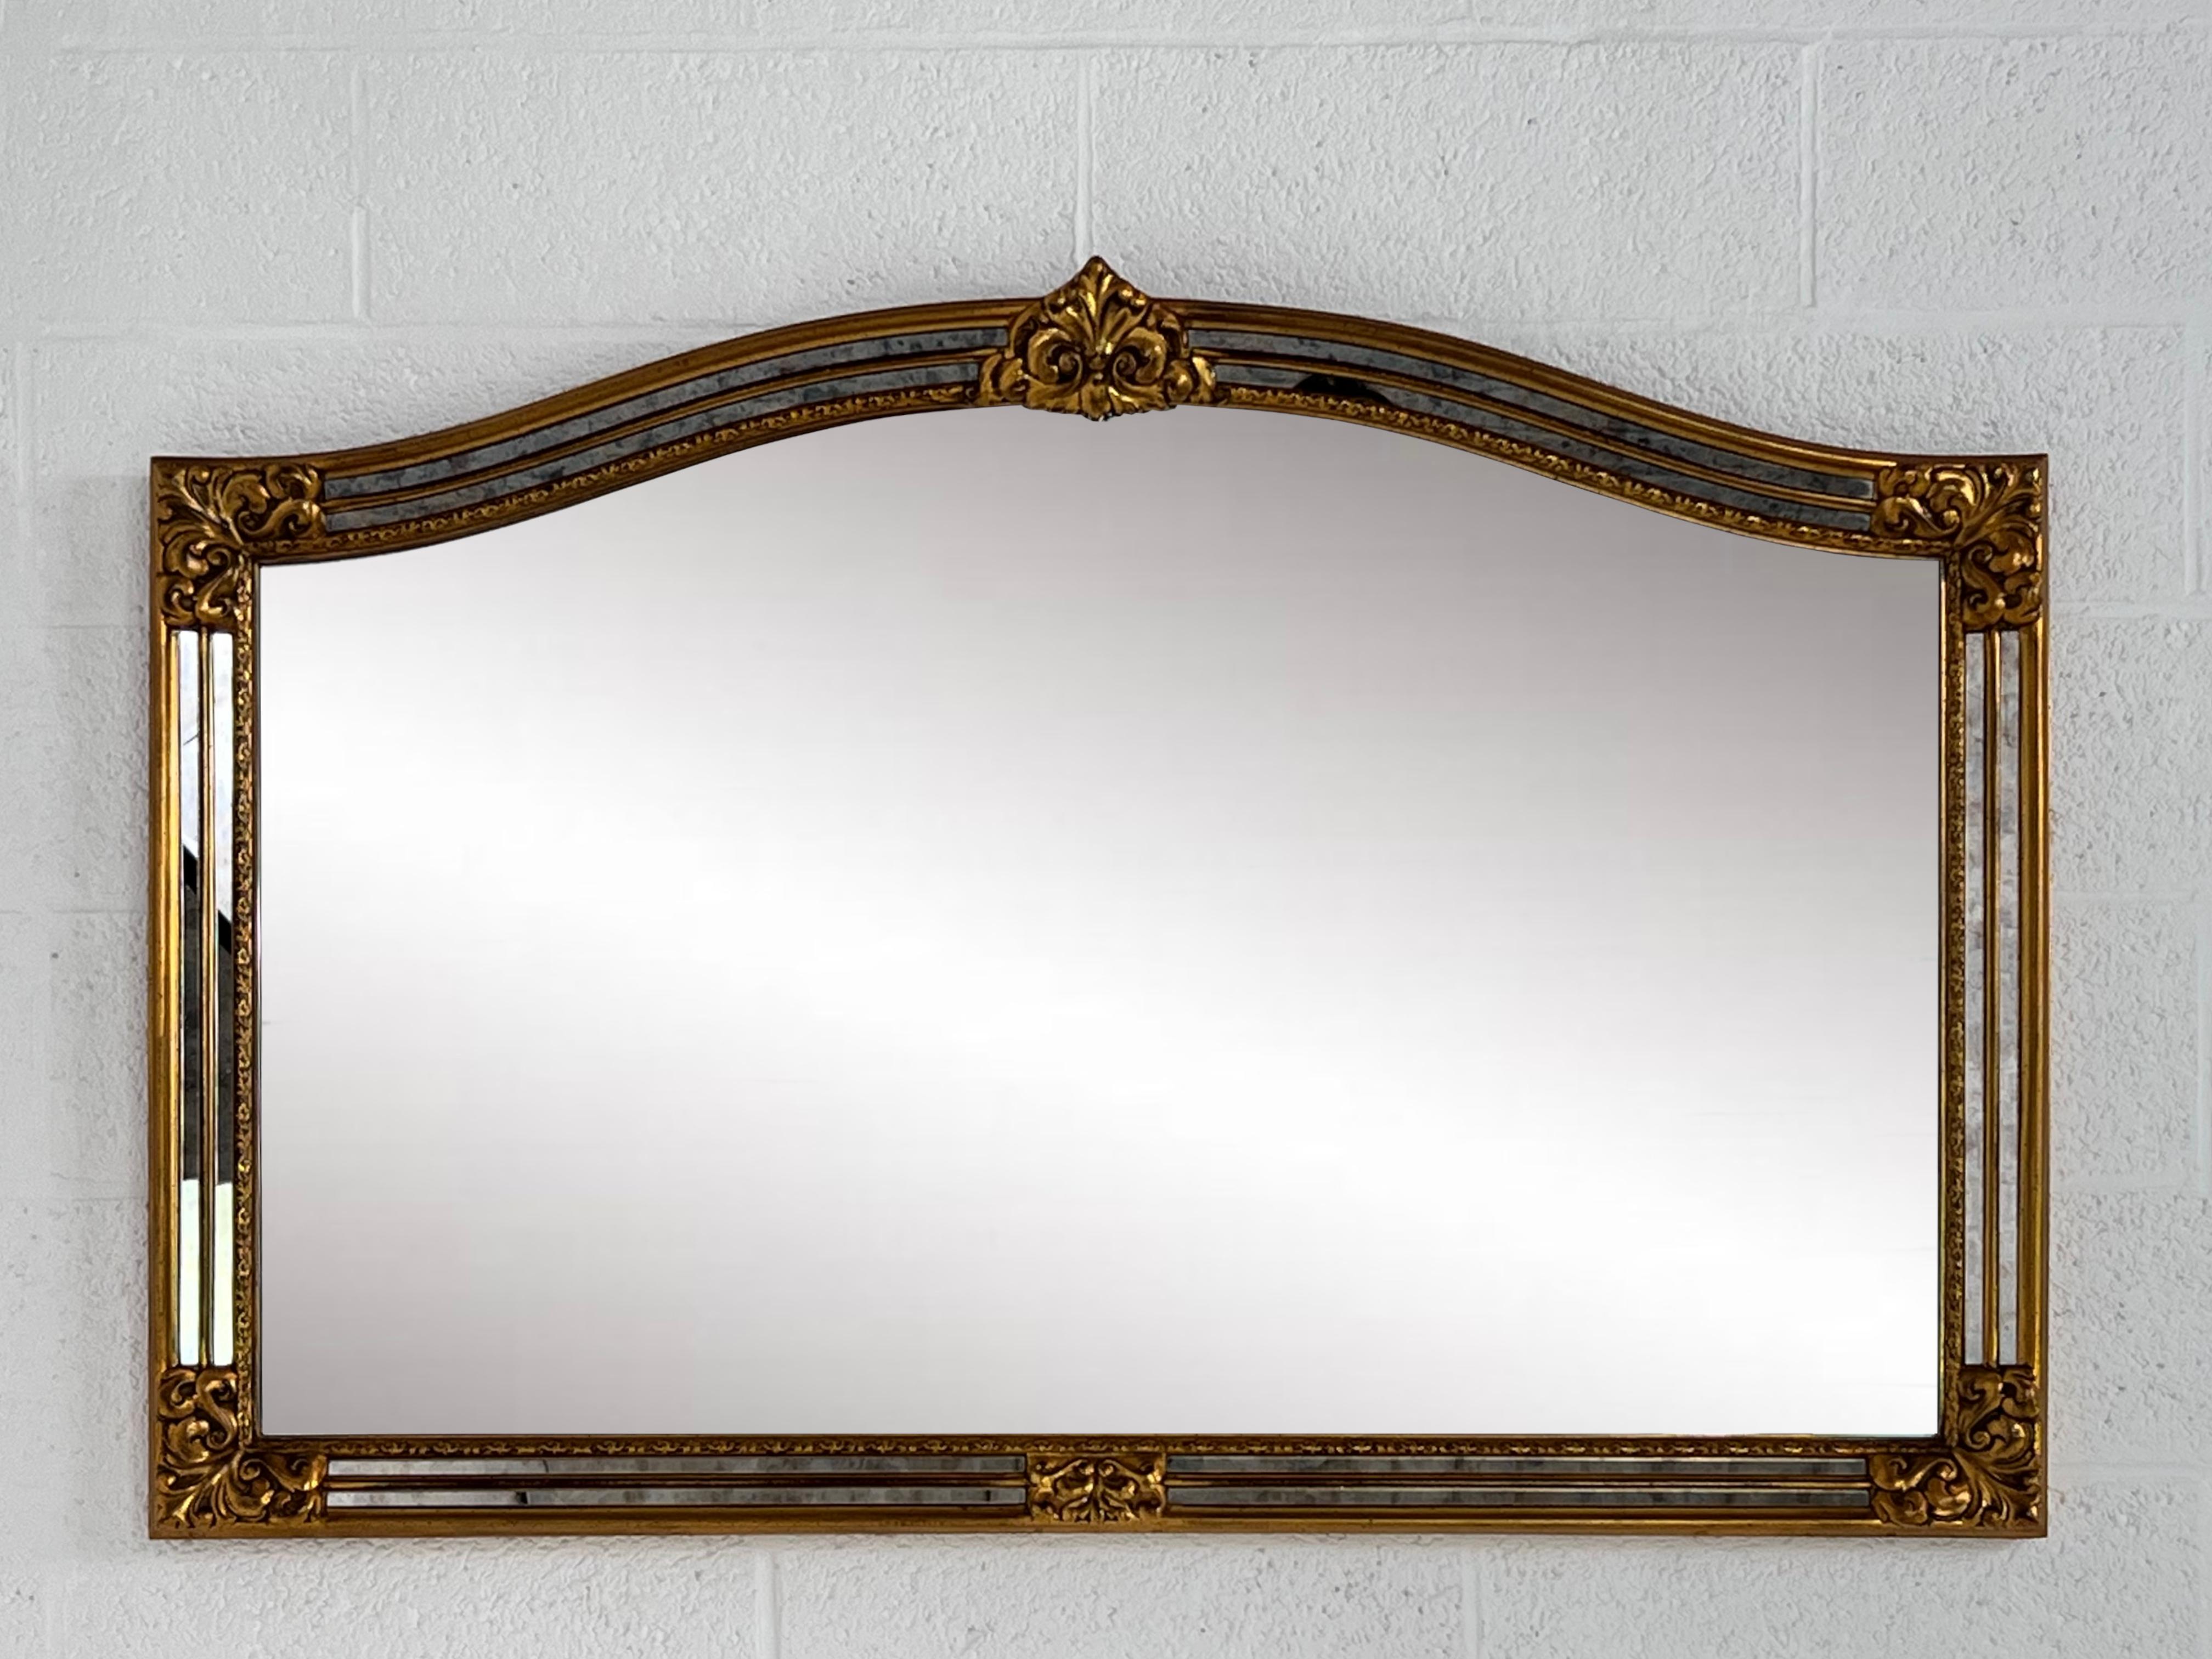 Großer Spiegel mit hochwertiger Verarbeitung. Er besticht durch seine Größe, aber auch durch die Qualität seiner Herstellung. In perfektem Zustand.